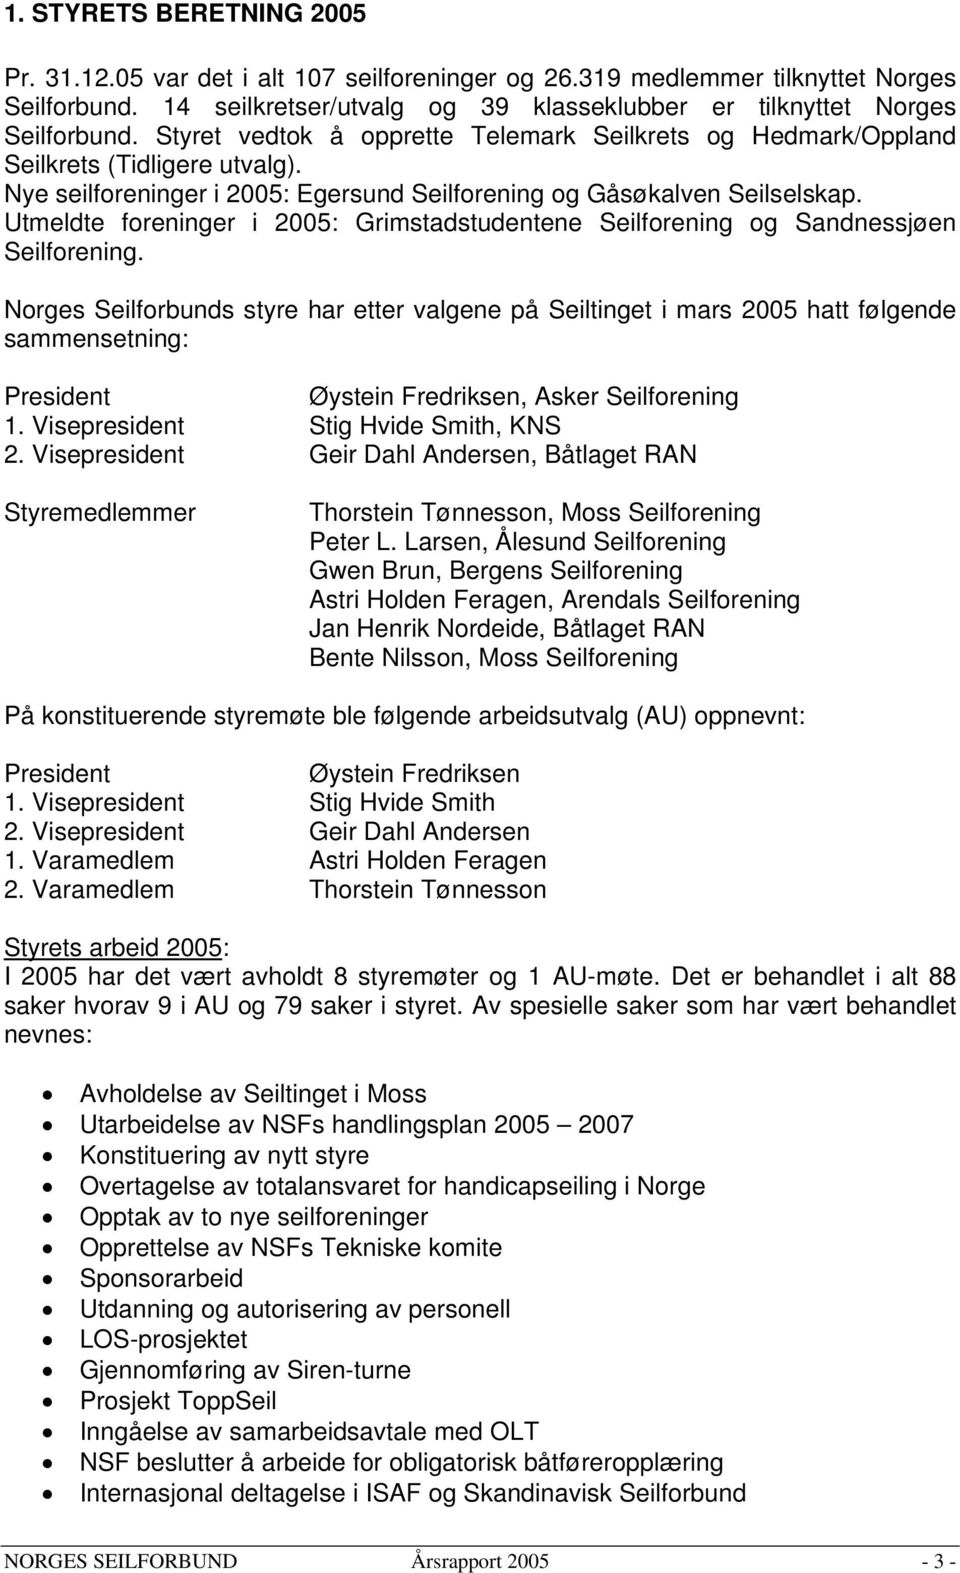 Utmeldte foreninger i 2005: Grimstadstudentene Seilforening og Sandnessjøen Seilforening.